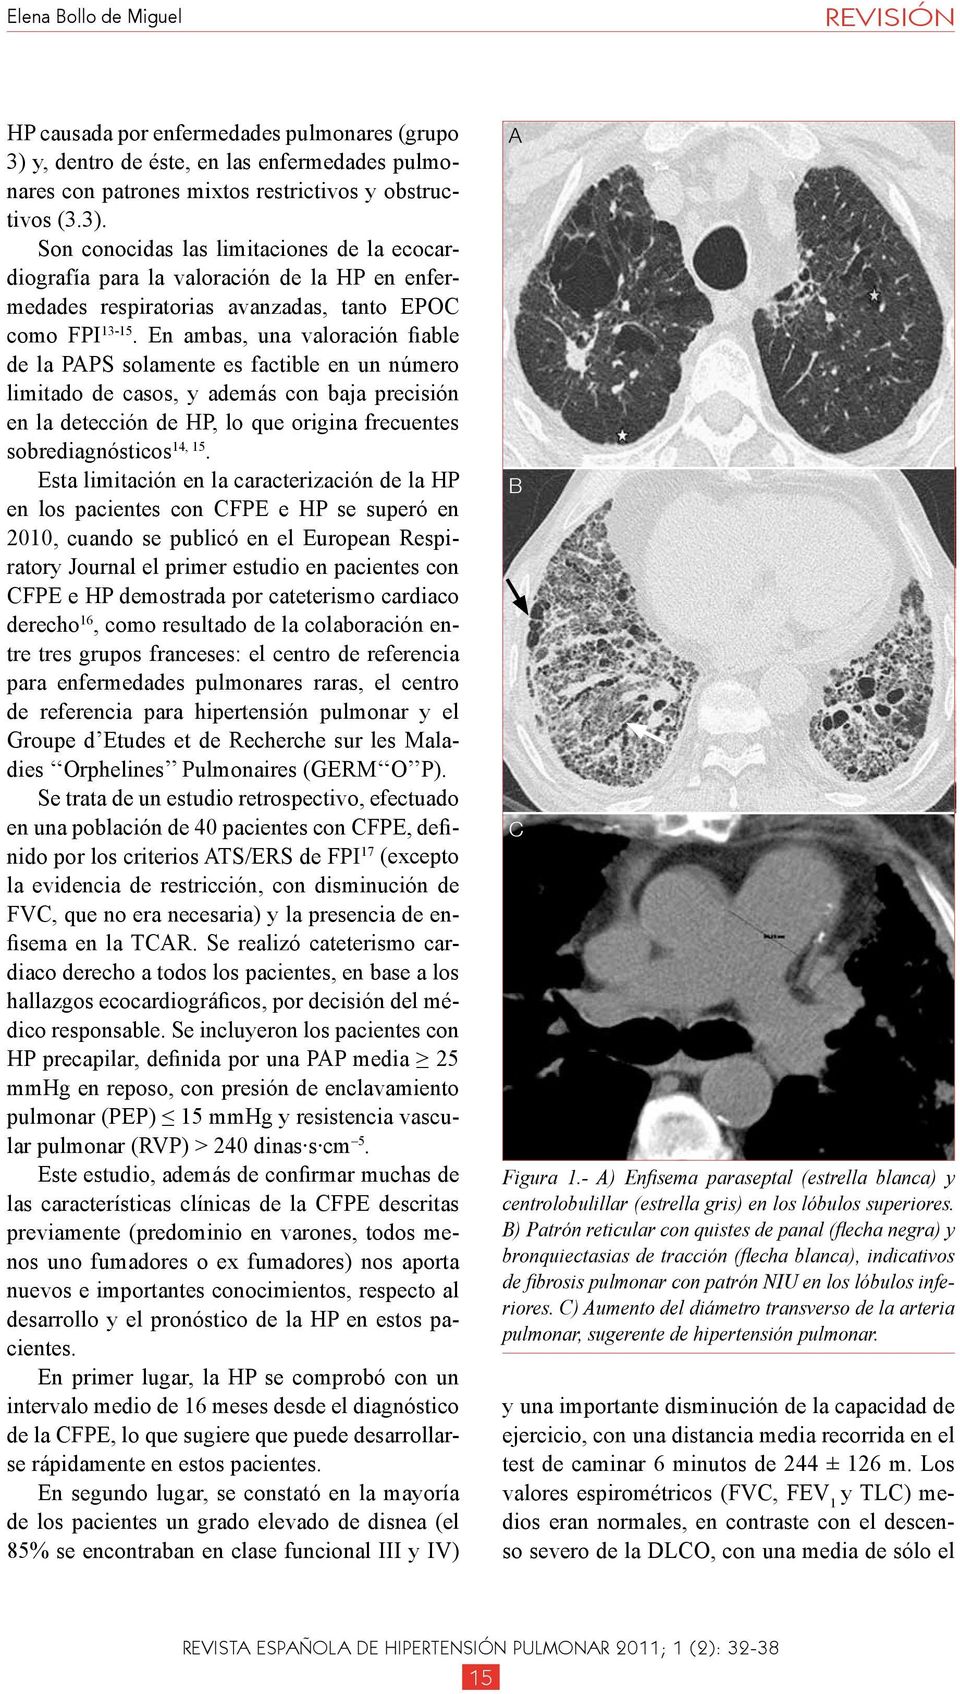 Son conocidas las limitaciones de la ecocardiografía para la valoración de la HP en enfermedades respiratorias avanzadas, tanto EPOC como FPI 13-15.